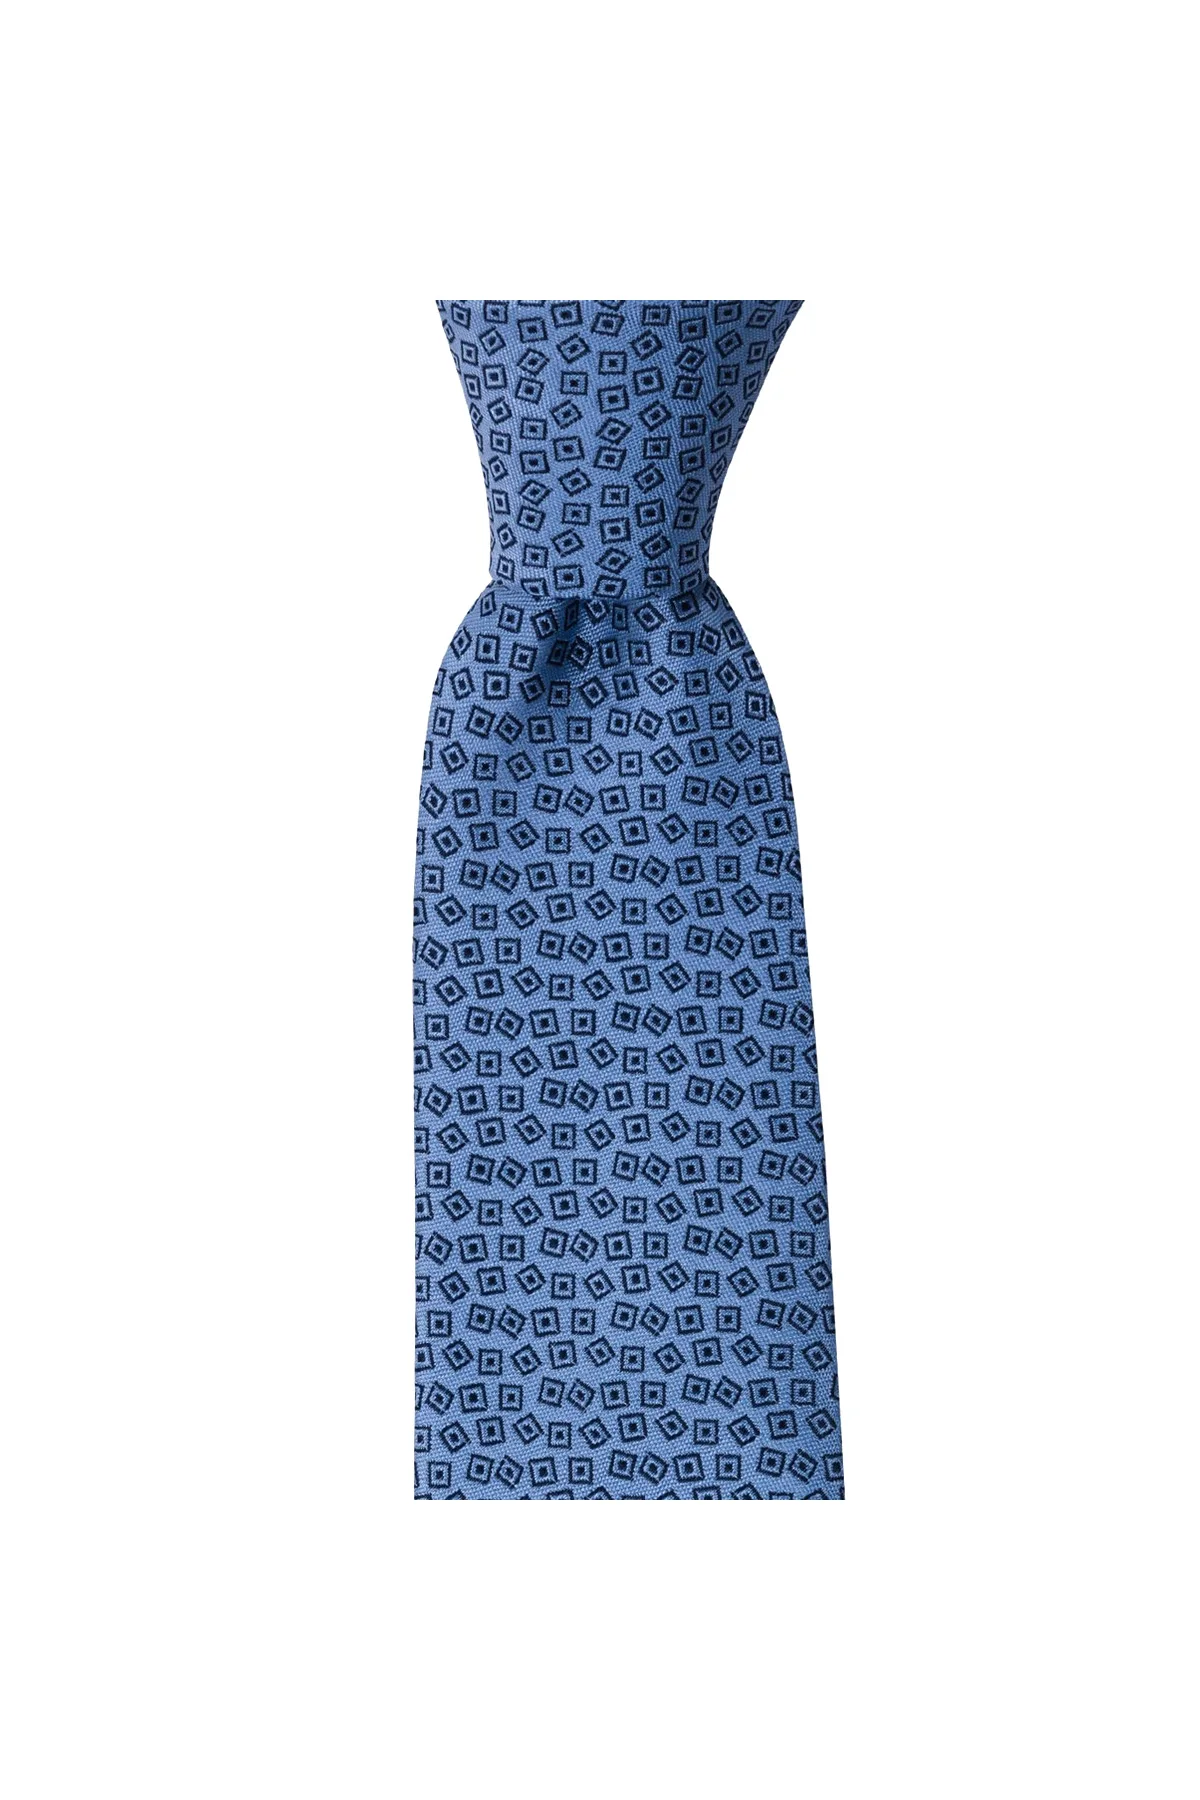 Мужской галстук классического дизайна Сделано в Италии ширина 8 см длина 145